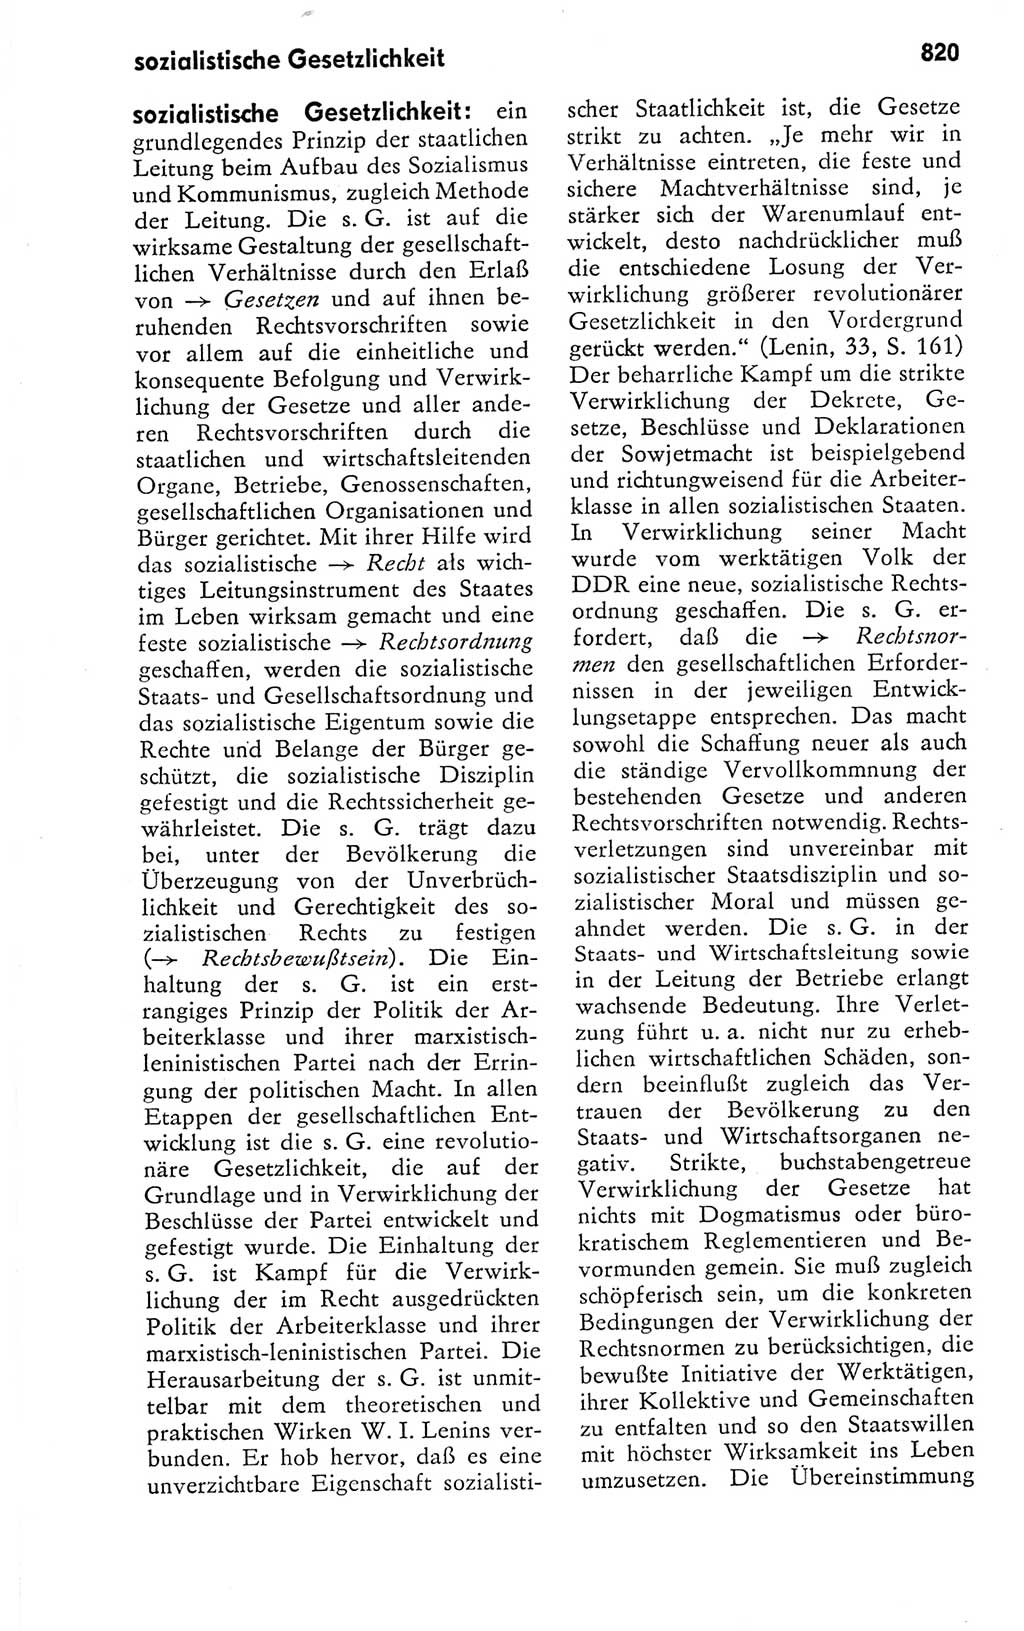 Kleines politisches Wörterbuch [Deutsche Demokratische Republik (DDR)] 1978, Seite 820 (Kl. pol. Wb. DDR 1978, S. 820)